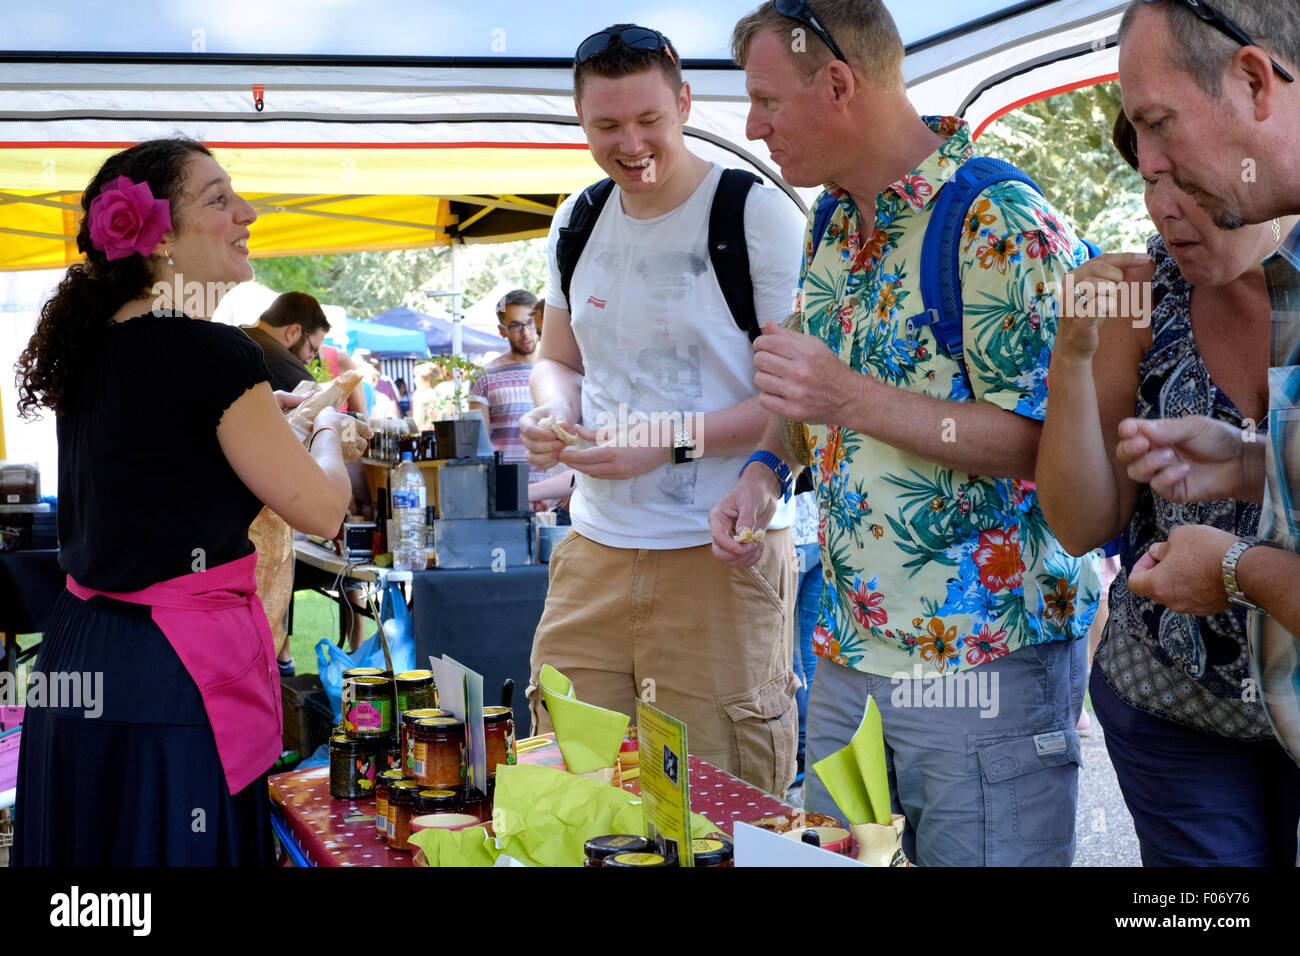 Muestra a los visitantes los productos de chili en un stand en la fiesta de chili festival en West dean jardines cerca de Chichester, West Sussex, Inglaterra 2015 Foto de stock